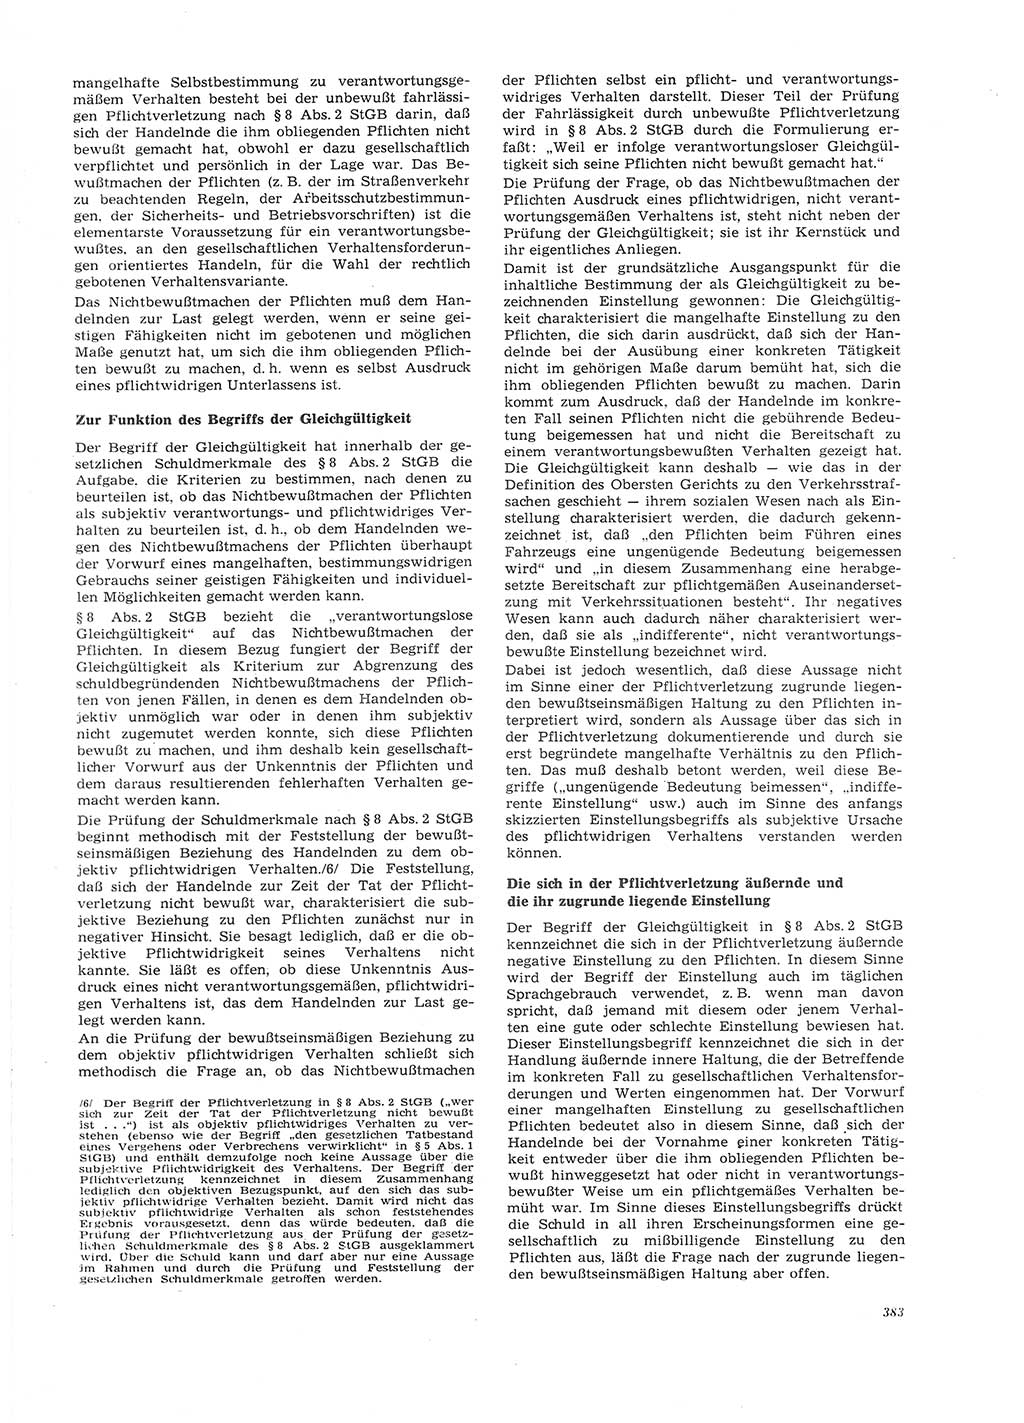 Neue Justiz (NJ), Zeitschrift für Recht und Rechtswissenschaft [Deutsche Demokratische Republik (DDR)], 26. Jahrgang 1972, Seite 383 (NJ DDR 1972, S. 383)